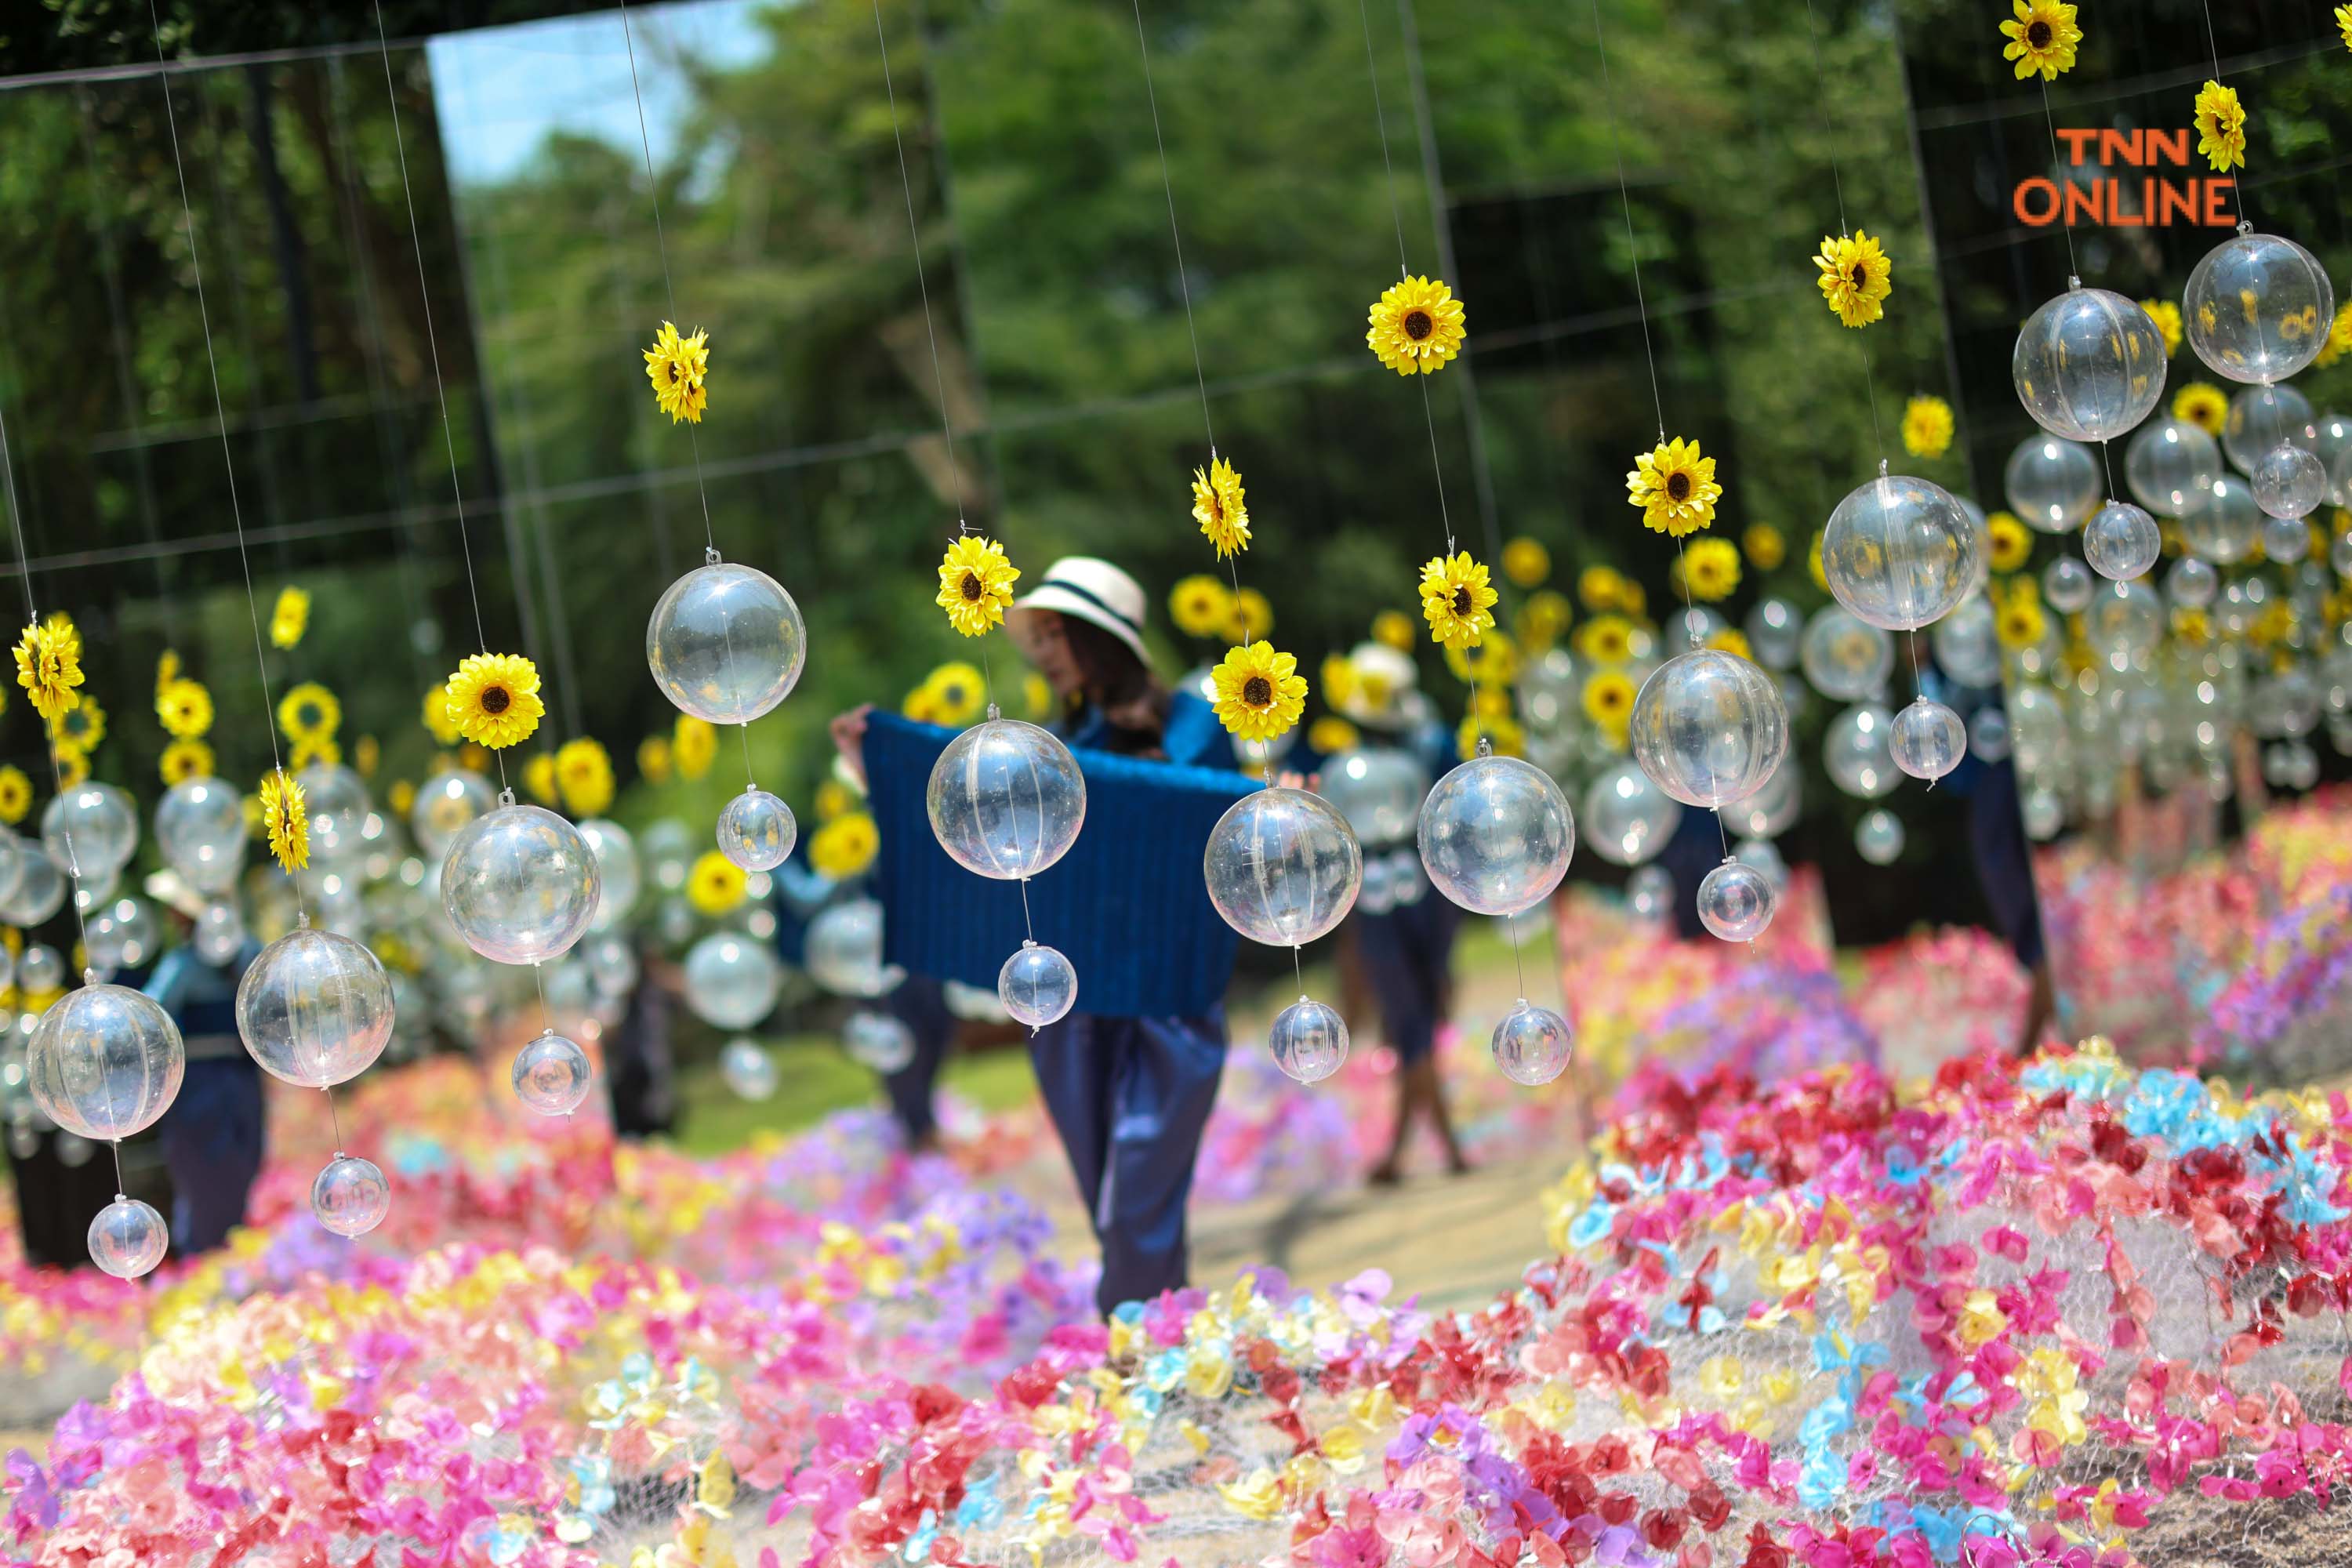 แชะ เที่ยว ชมดอกไม้นานาพันธ์ุ งานเทศกาลฤดูร้อน ณ สัทธา อุทยานไทย